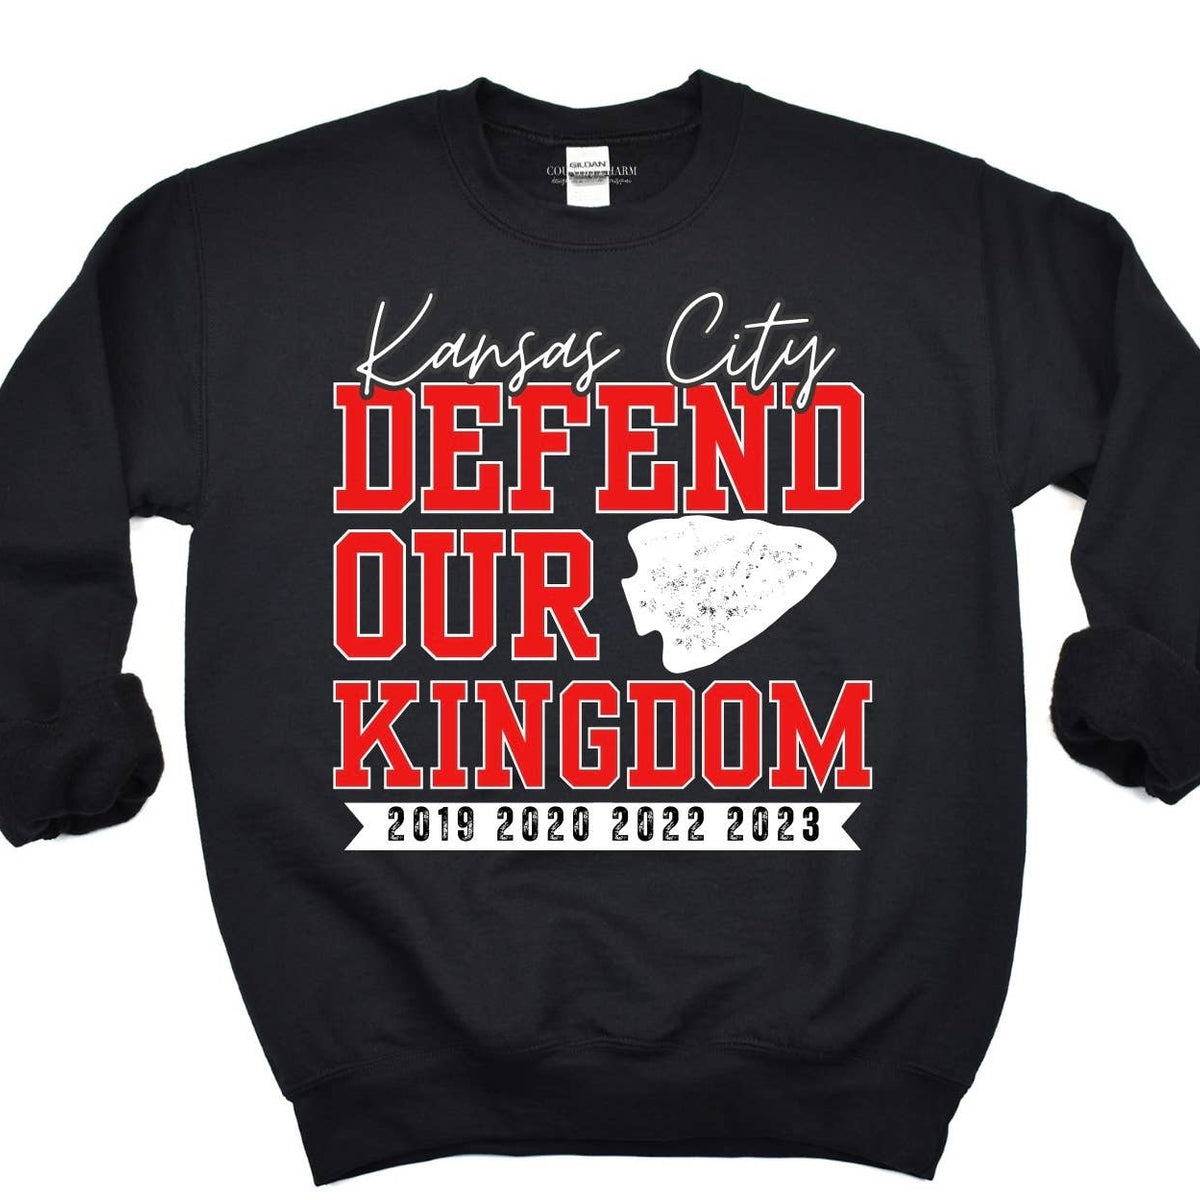 Defend Our Kingdom | Kansas City